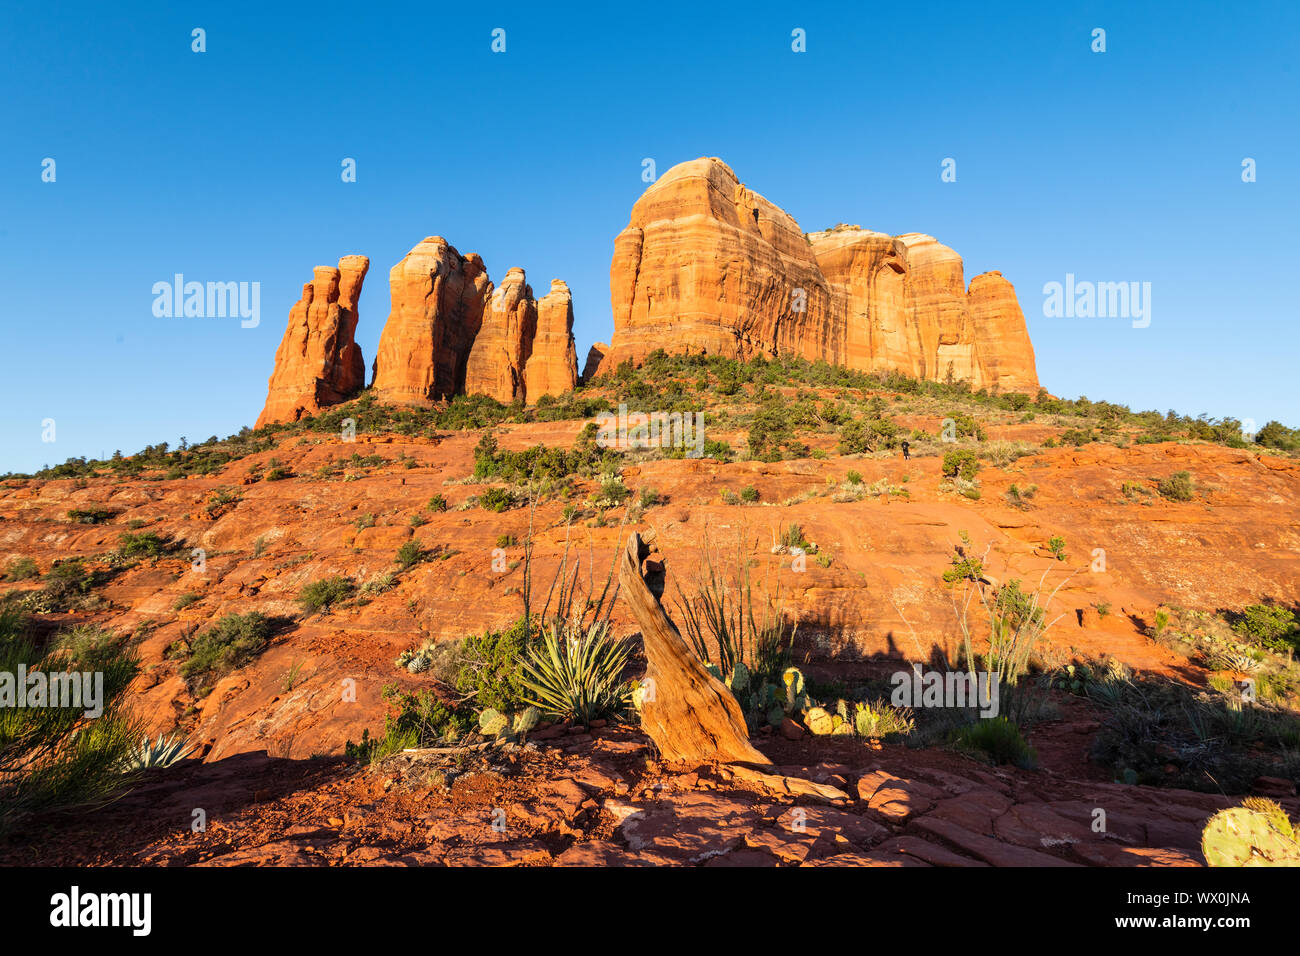 Cattedrale Rock, Sedona, in Arizona, Stati Uniti d'America, America del Nord Foto Stock